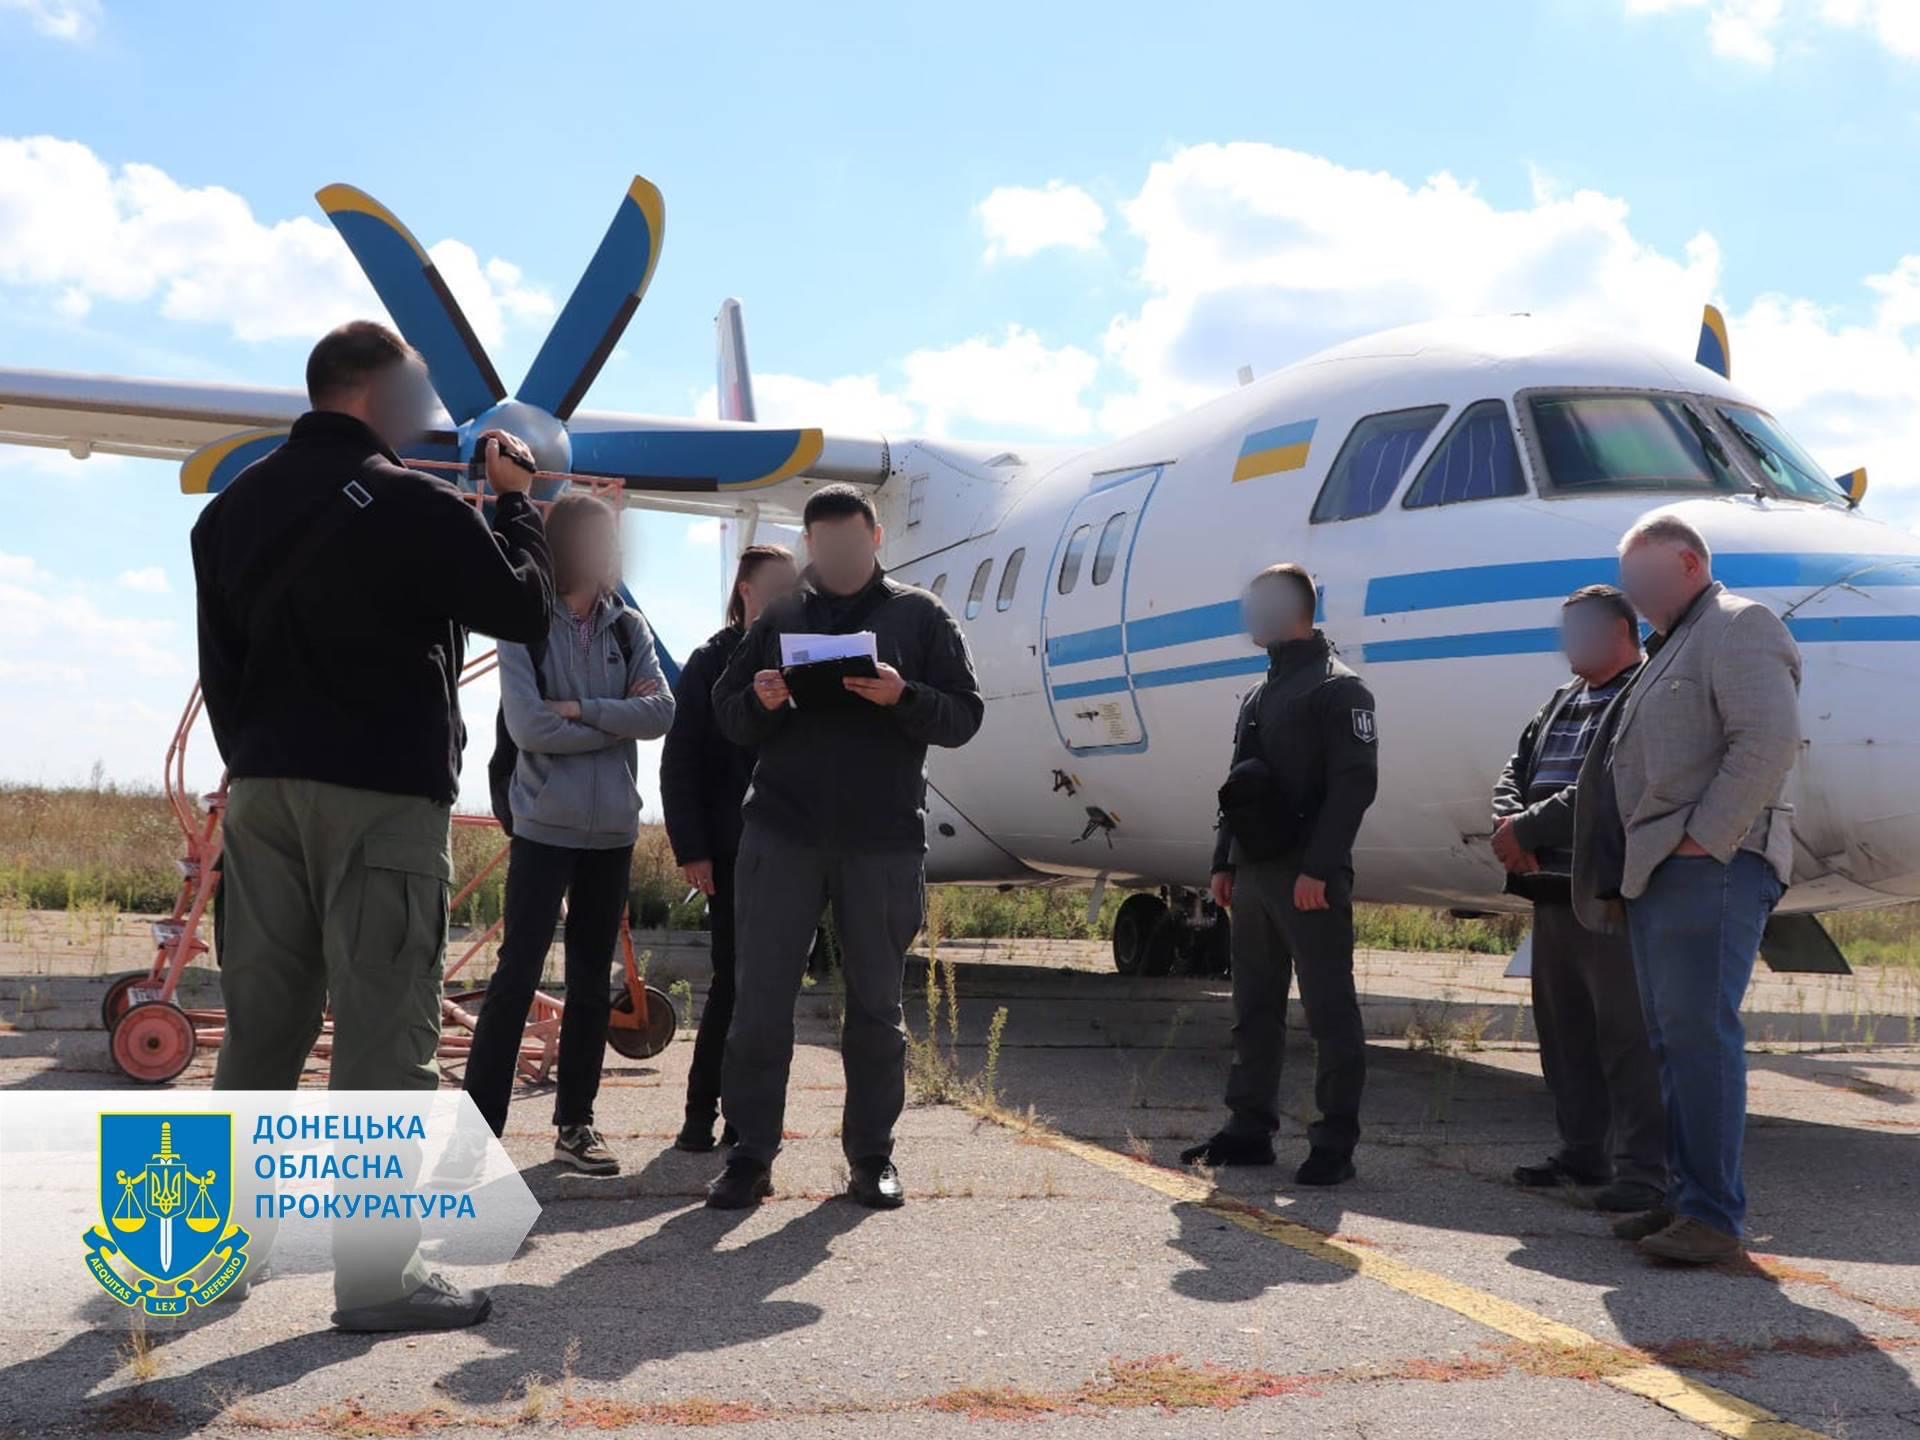 Правоохранители арестовали самолет за 20 млн грн: его владелец, вероятно, собирался создать авиакомпанию в оккупированном Мариуполе 1